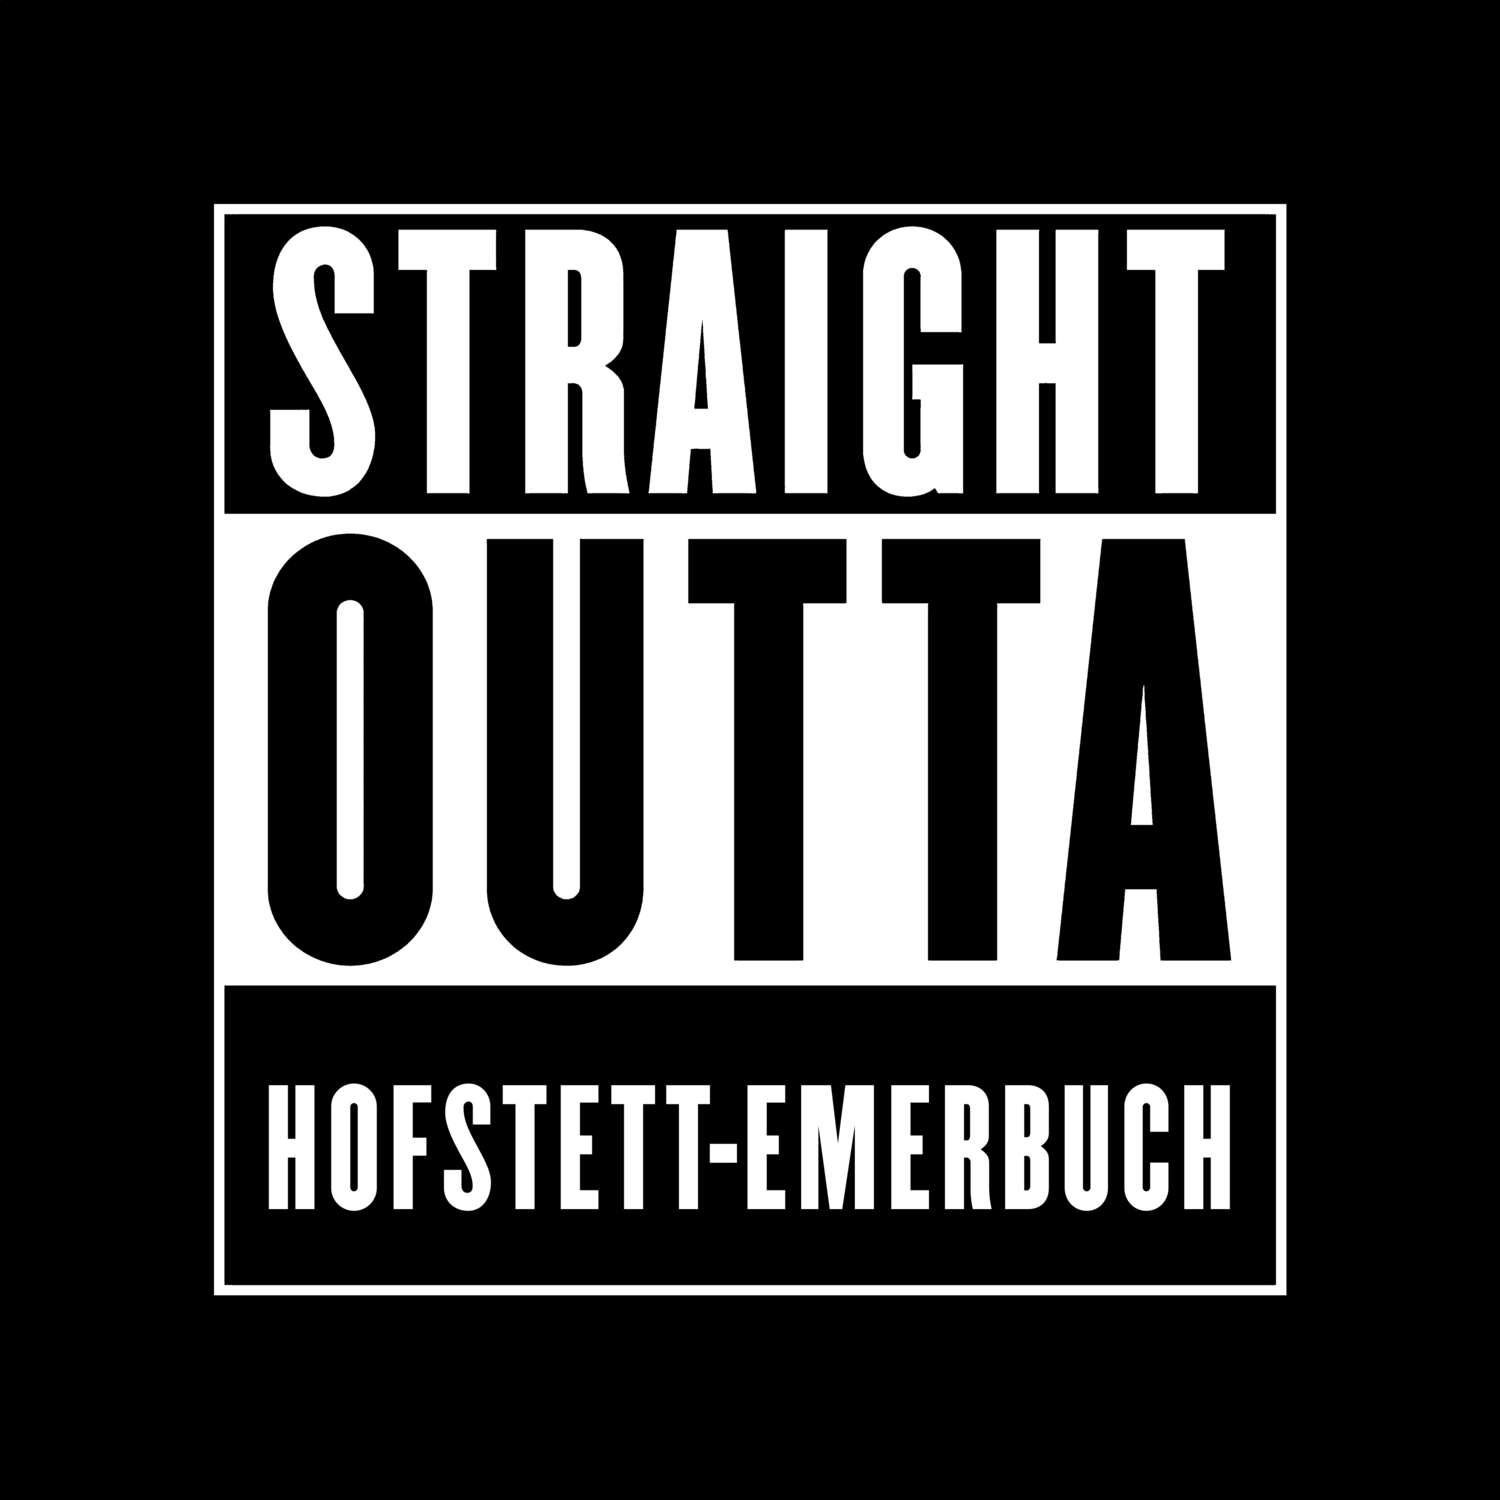 Hofstett-Emerbuch T-Shirt »Straight Outta«